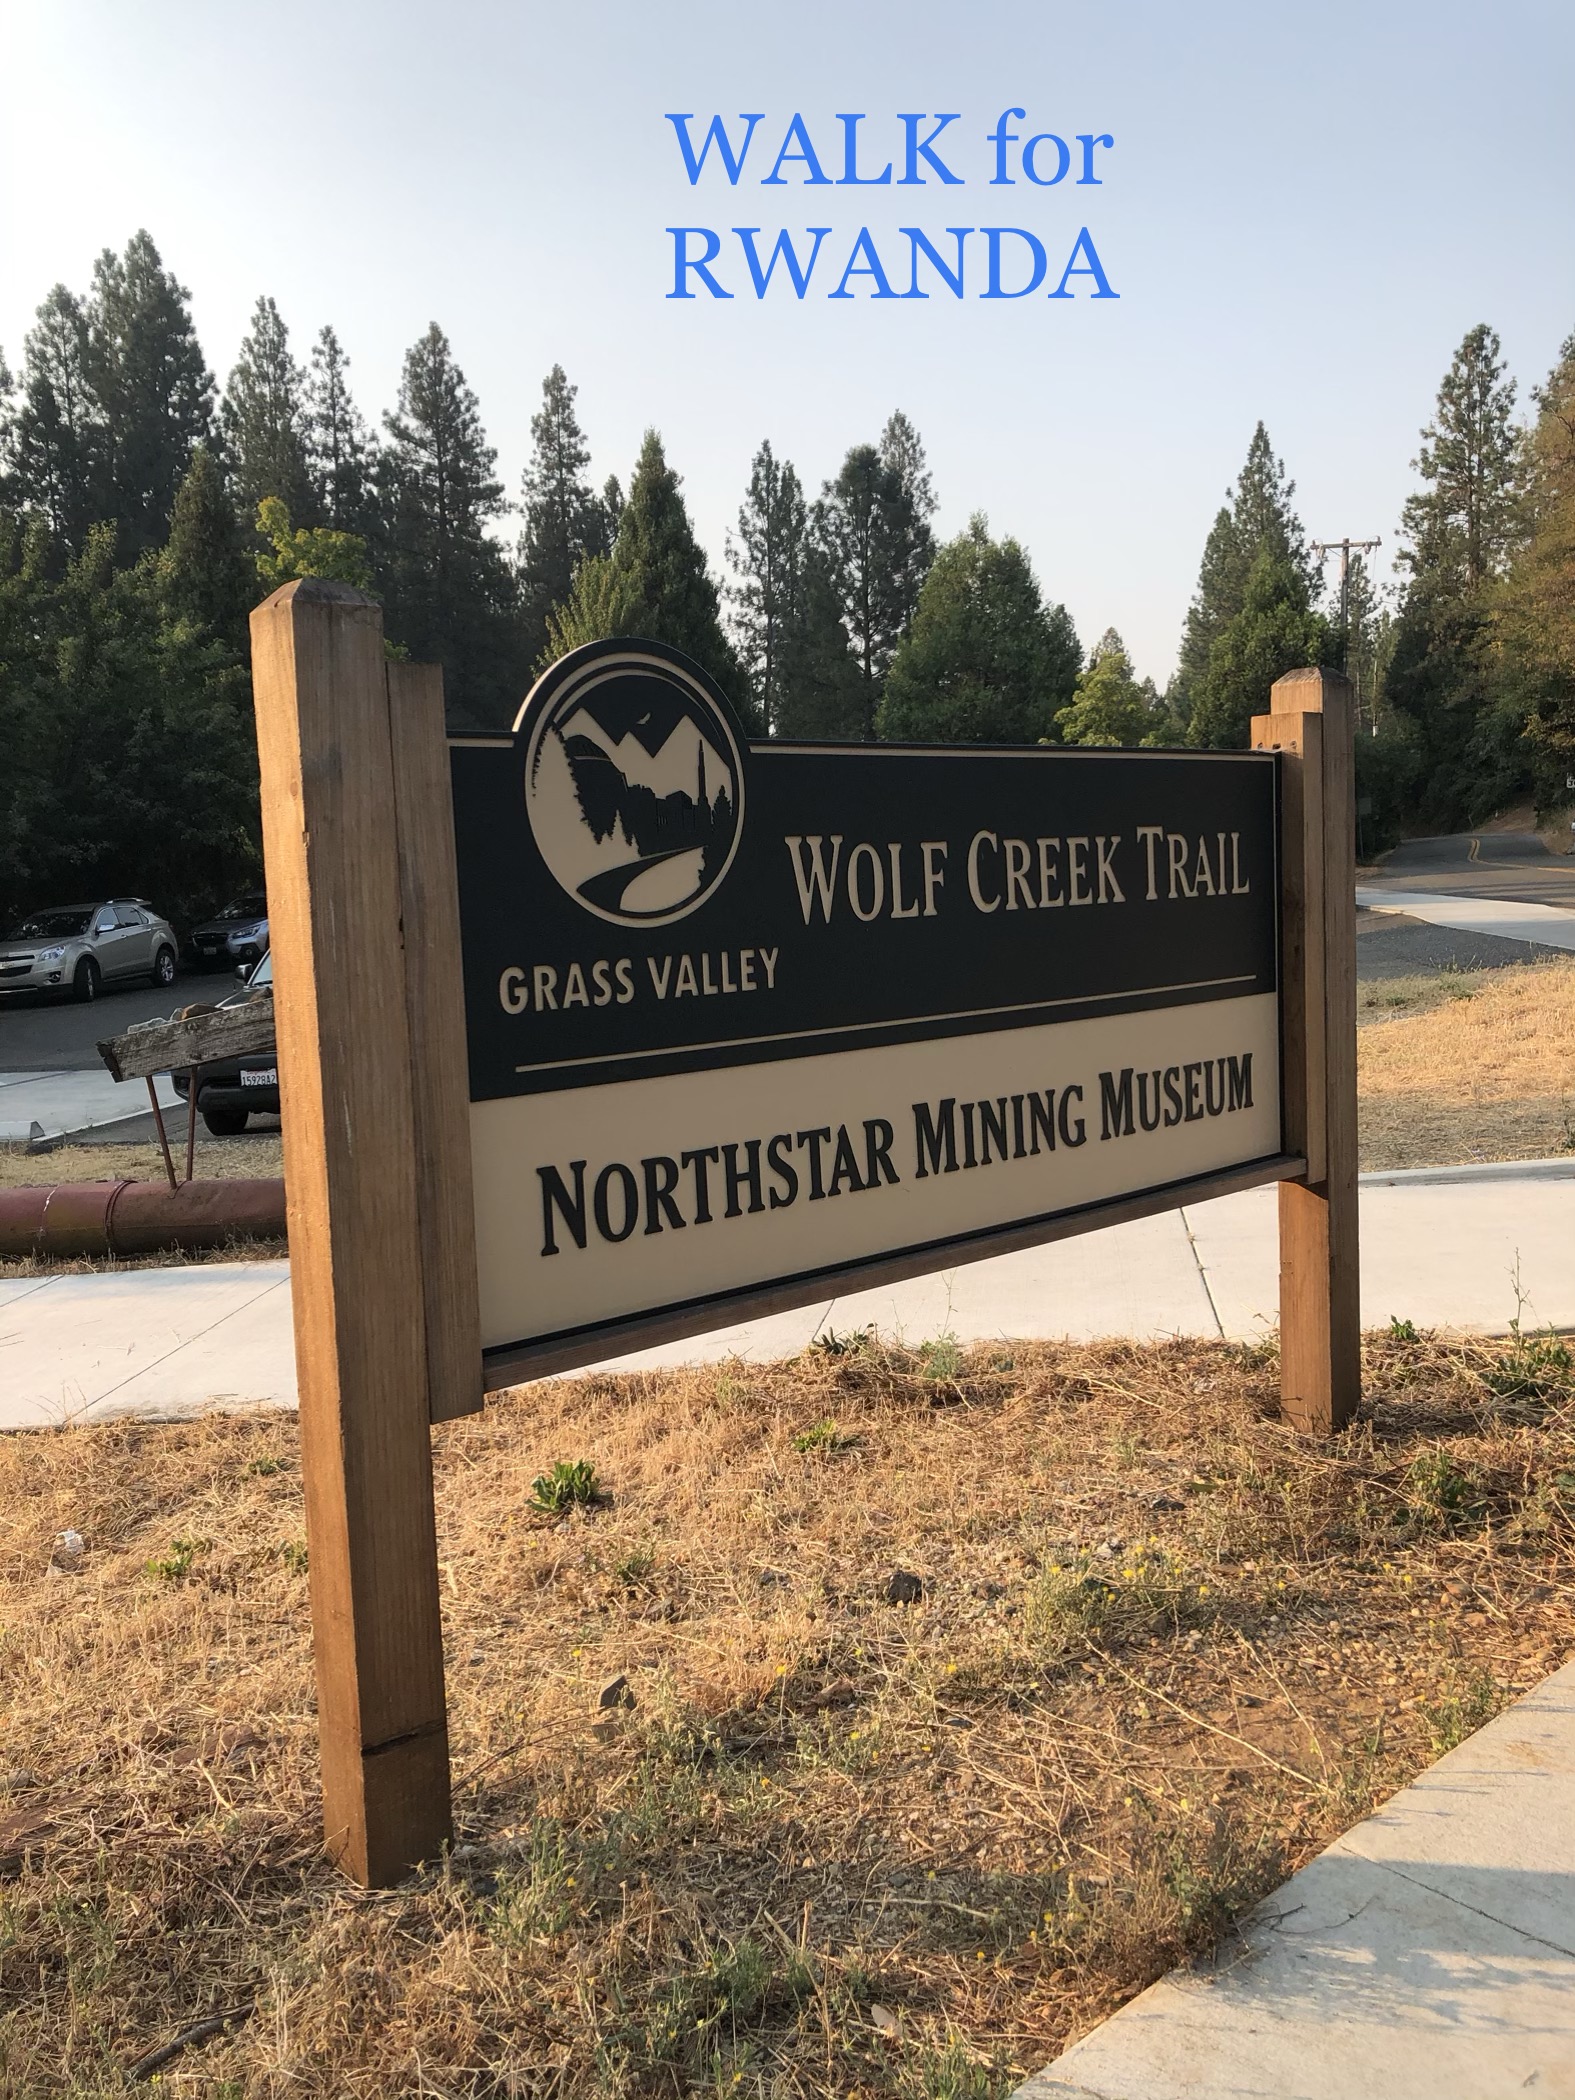 Walk for Rwanda on the Wolf Creek Trail